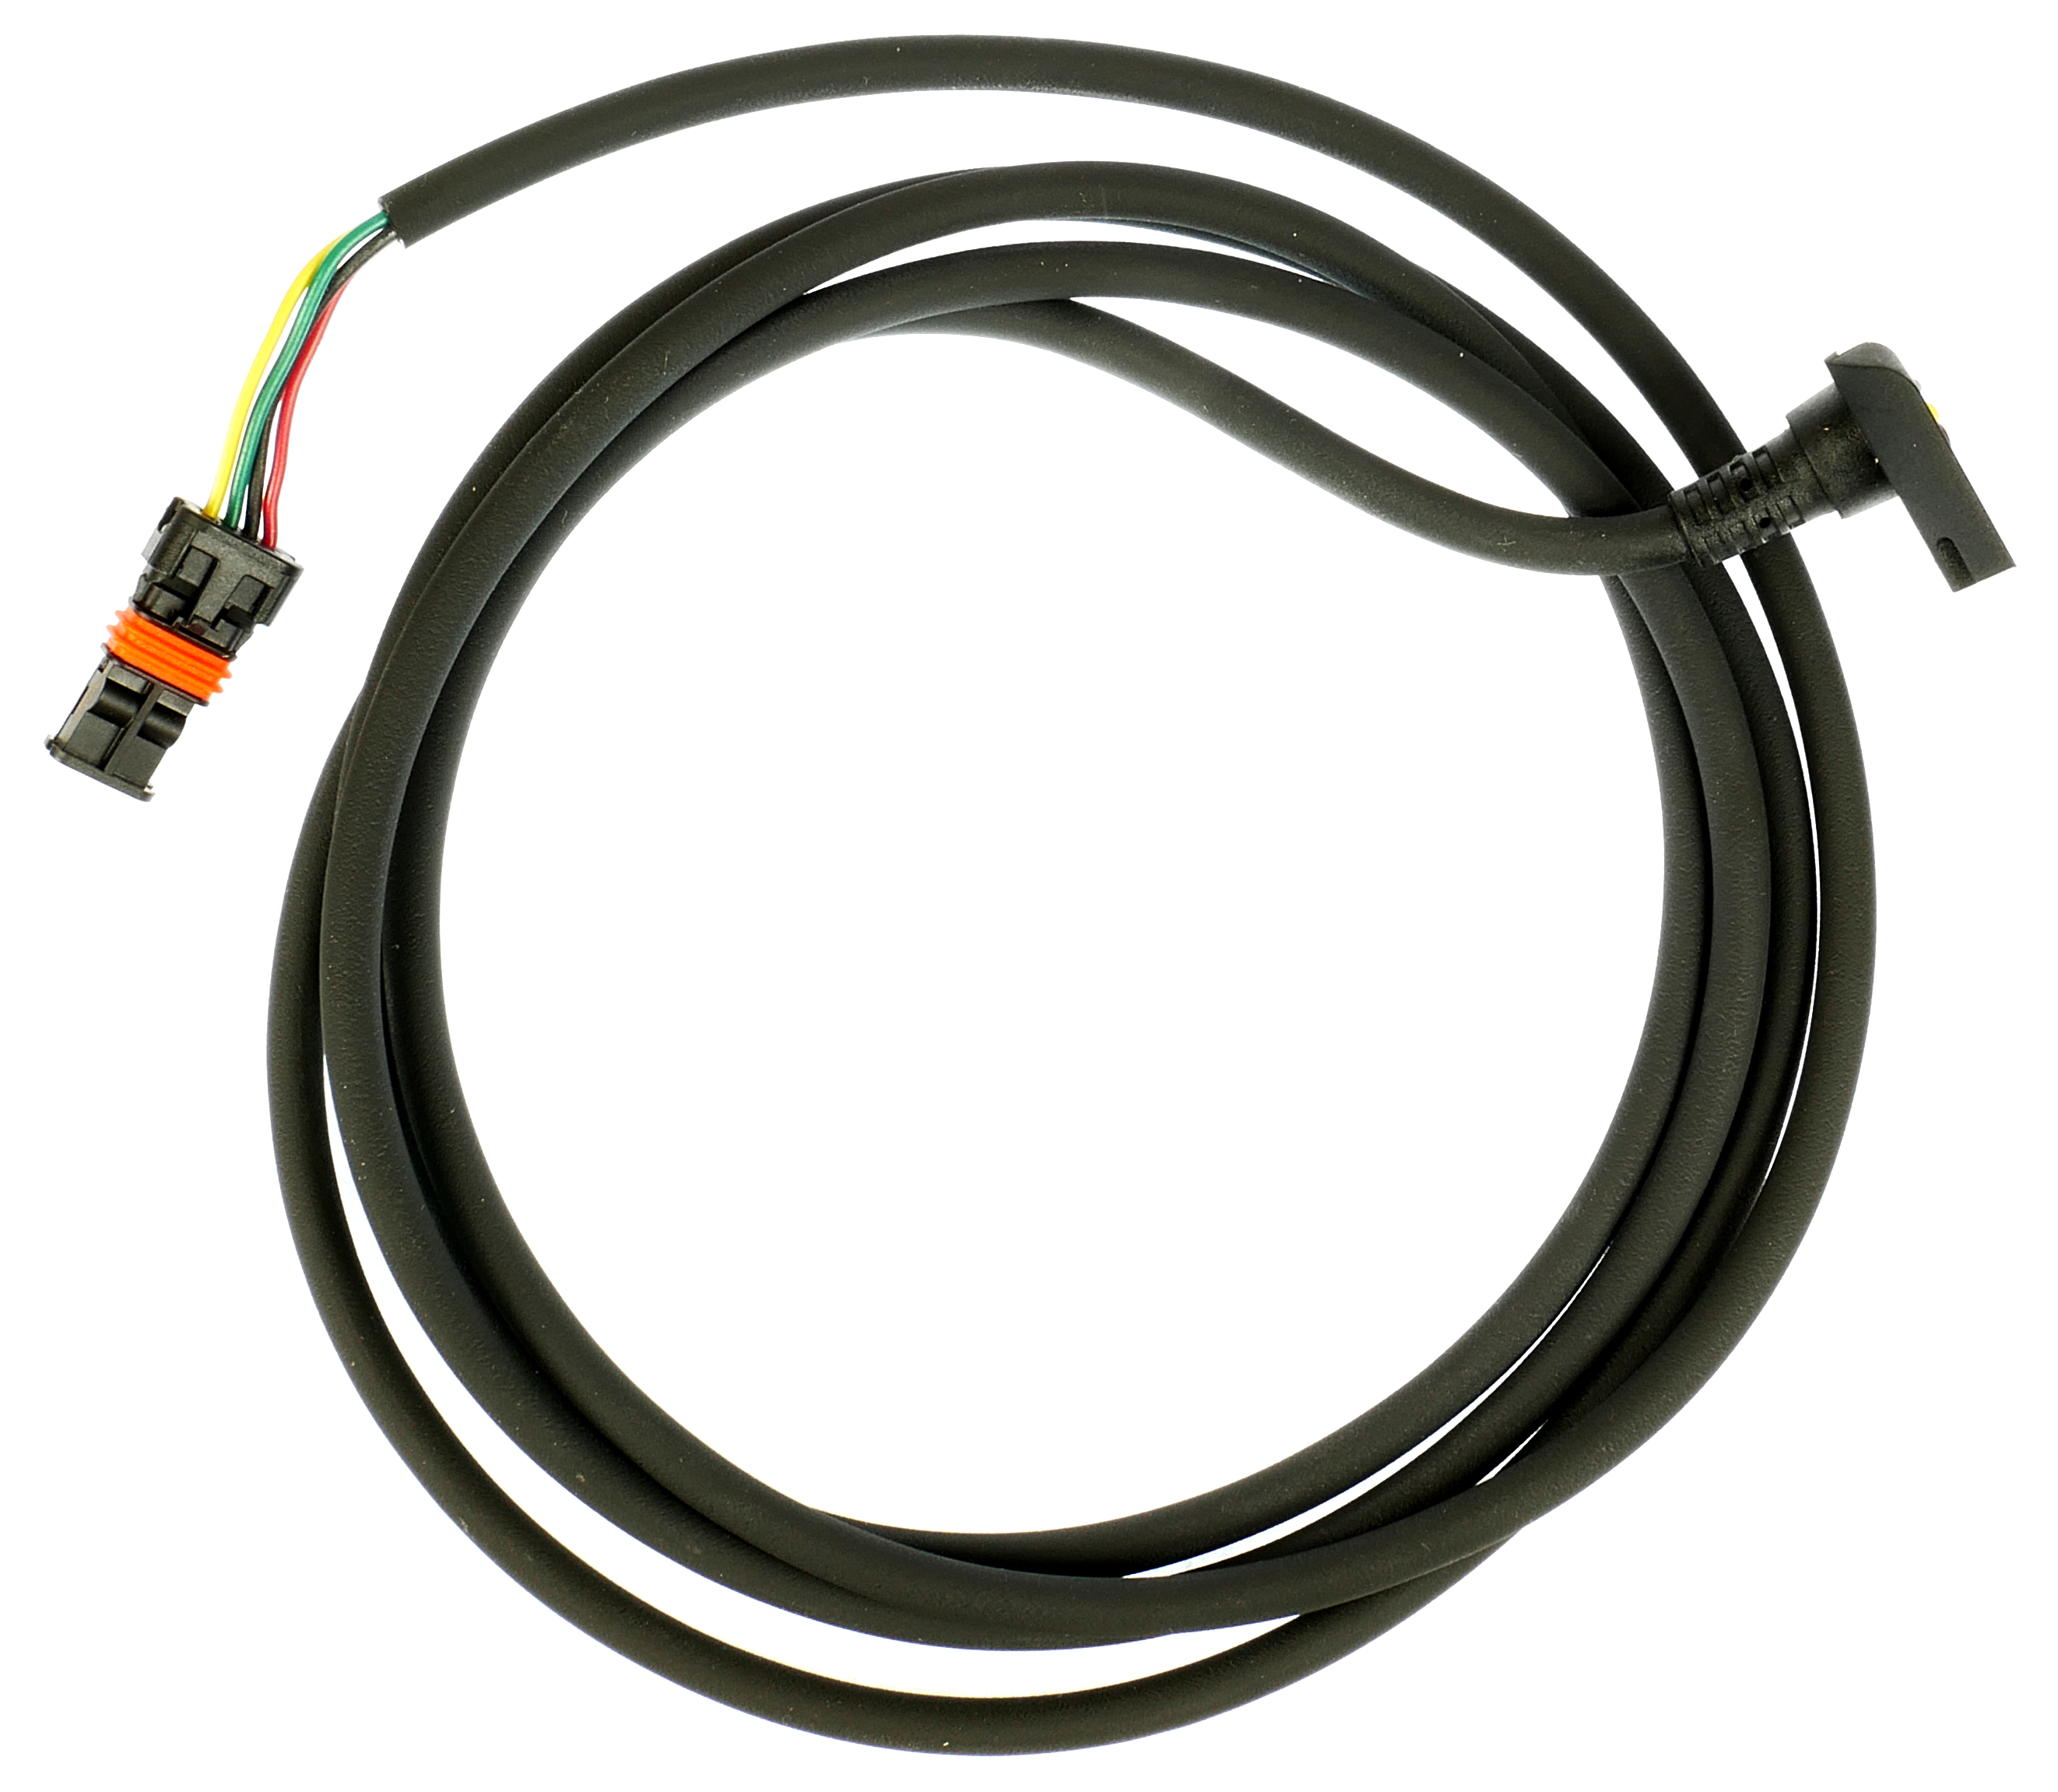 Bosch Display Intuvia Kabel Verbindungskabel 1500mm zur Antriebseinheit *neu* 